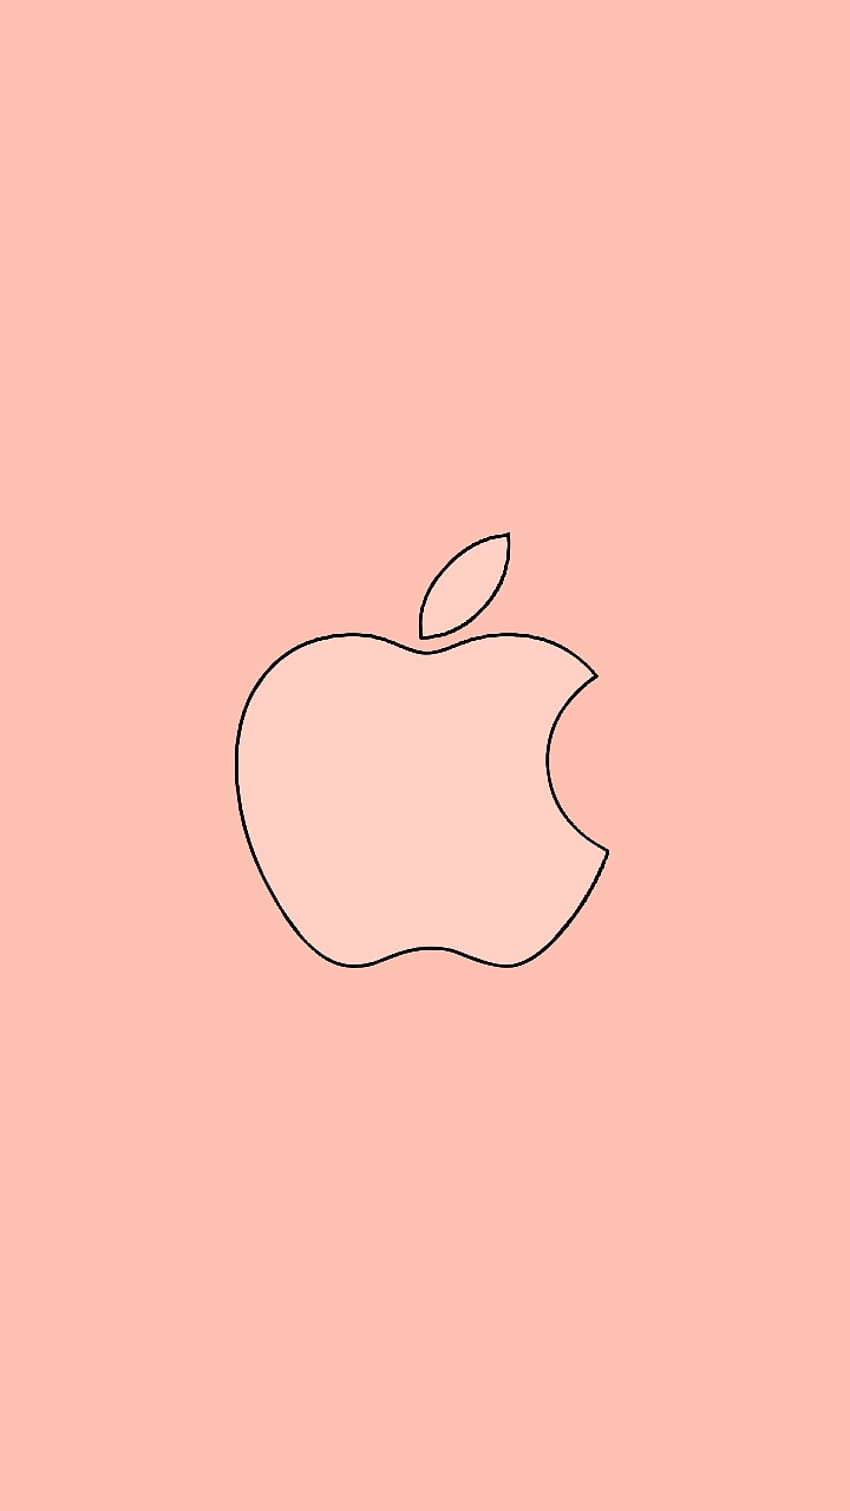 Logo Apple Mawar Emas, iPhone wallpaper ponsel HD